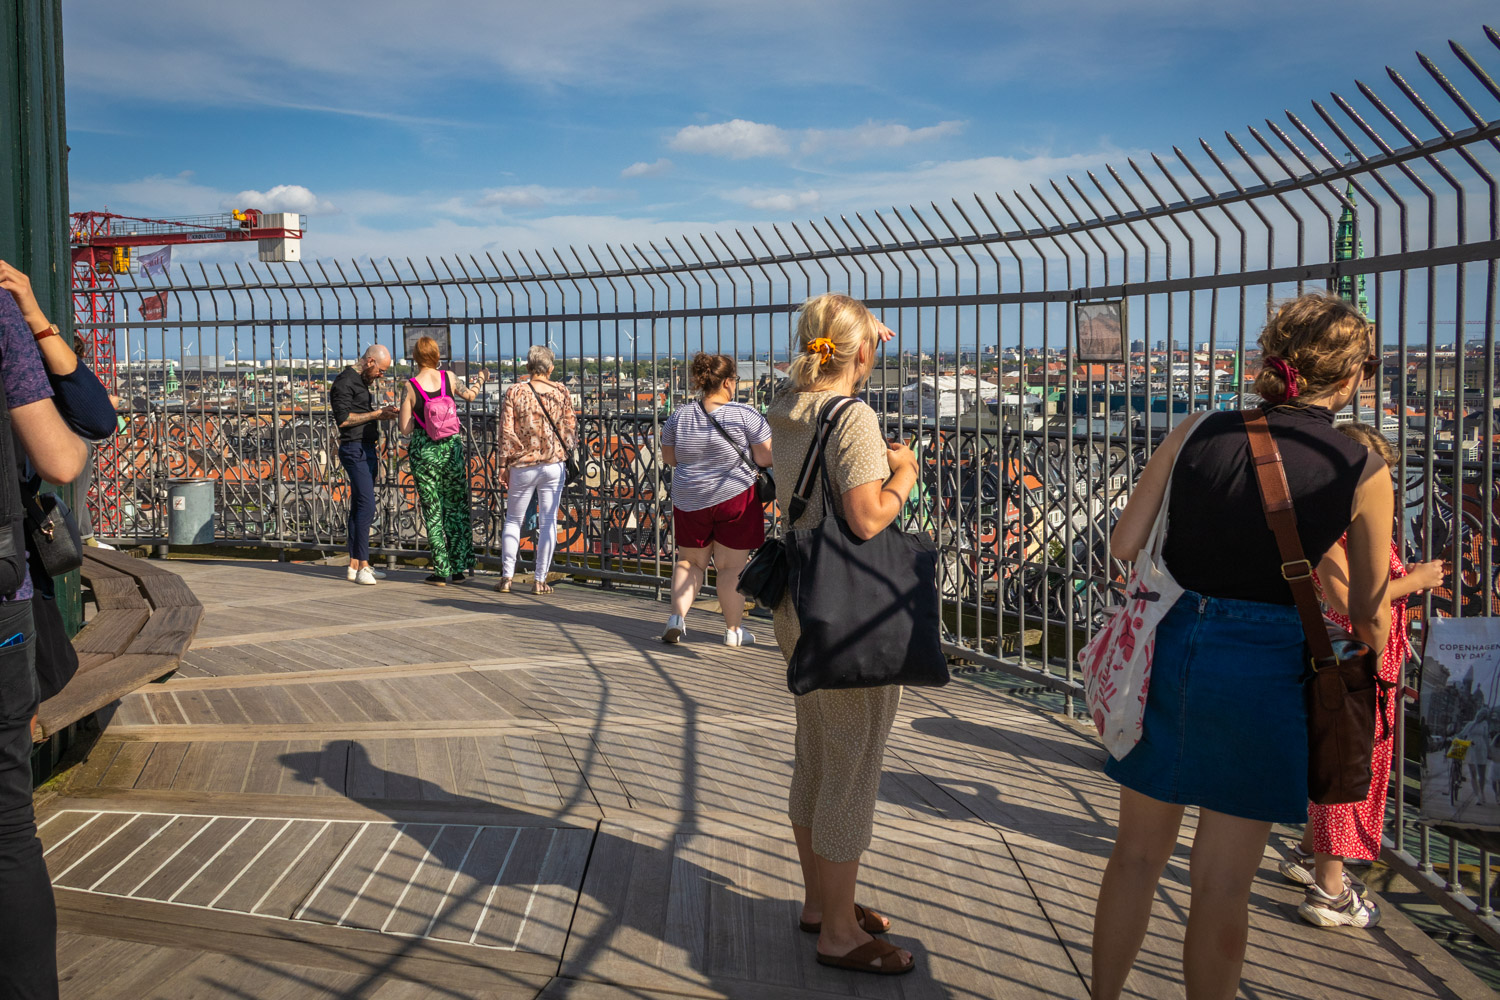 Mensen op het uitkijkplatform van de Rundetaarn in Kopenhagen met een hek eromheen